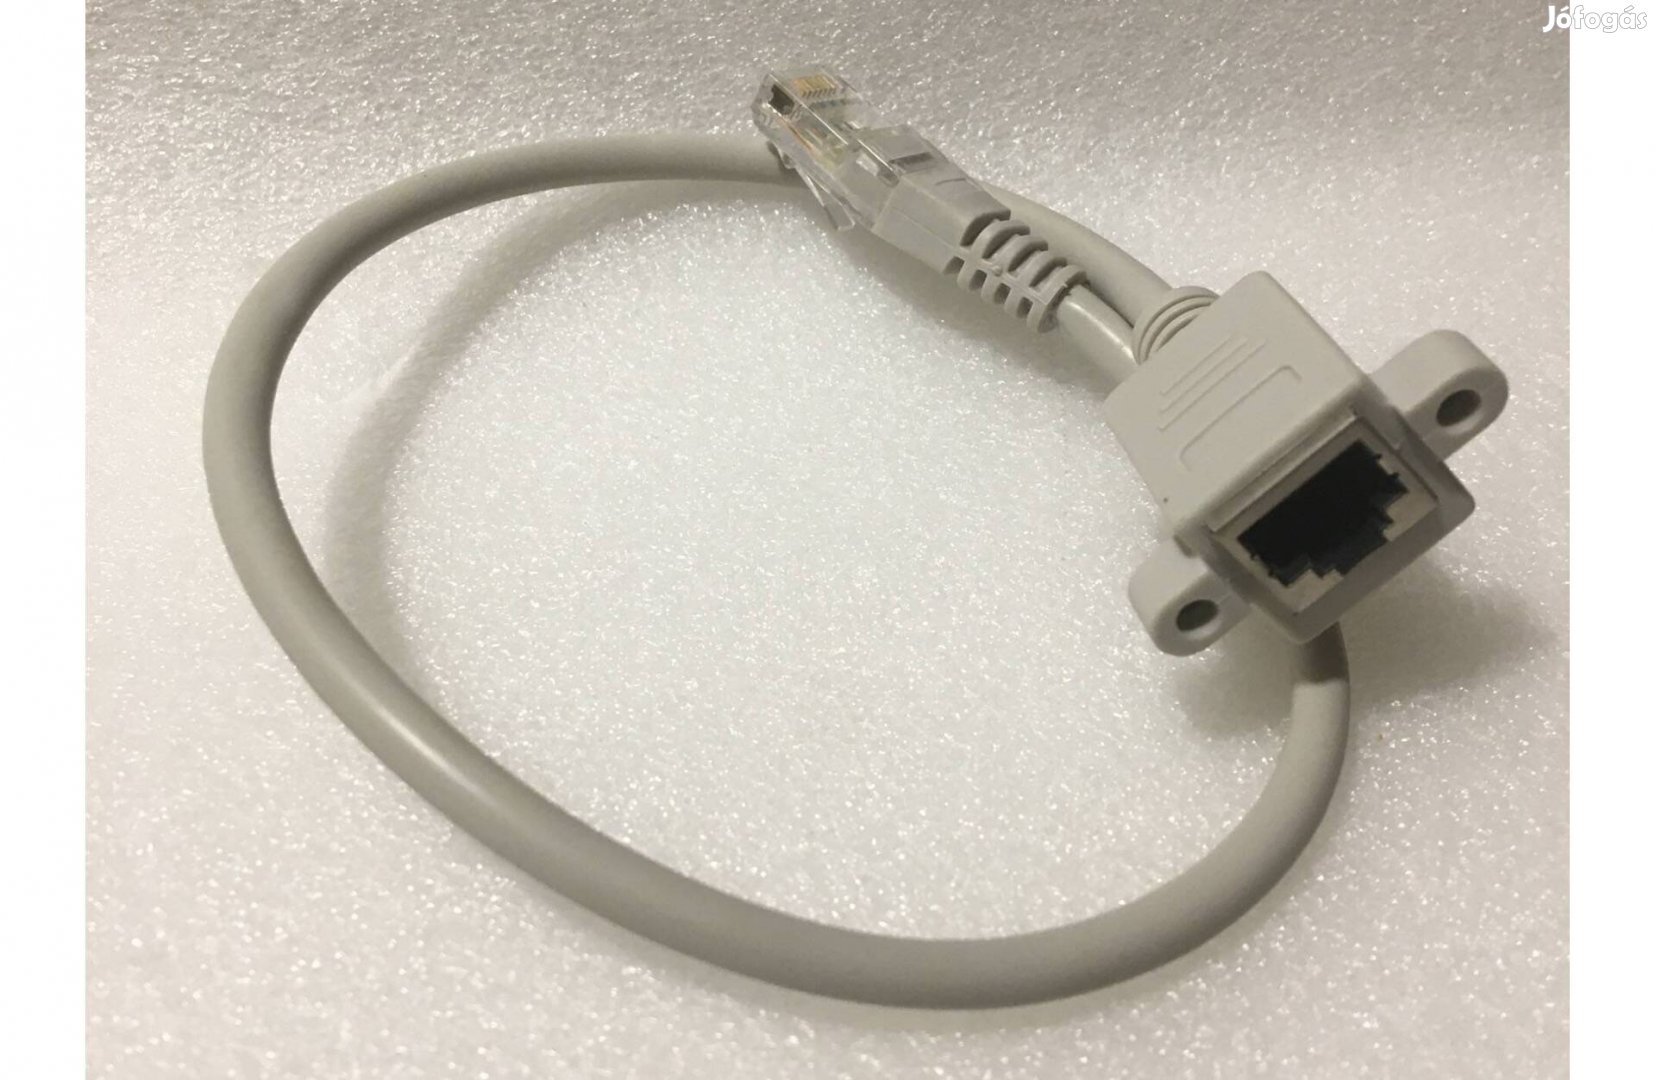 Dobozba szerelhető egyenes bekötésű Ethernet kábel aljzattal RJ45